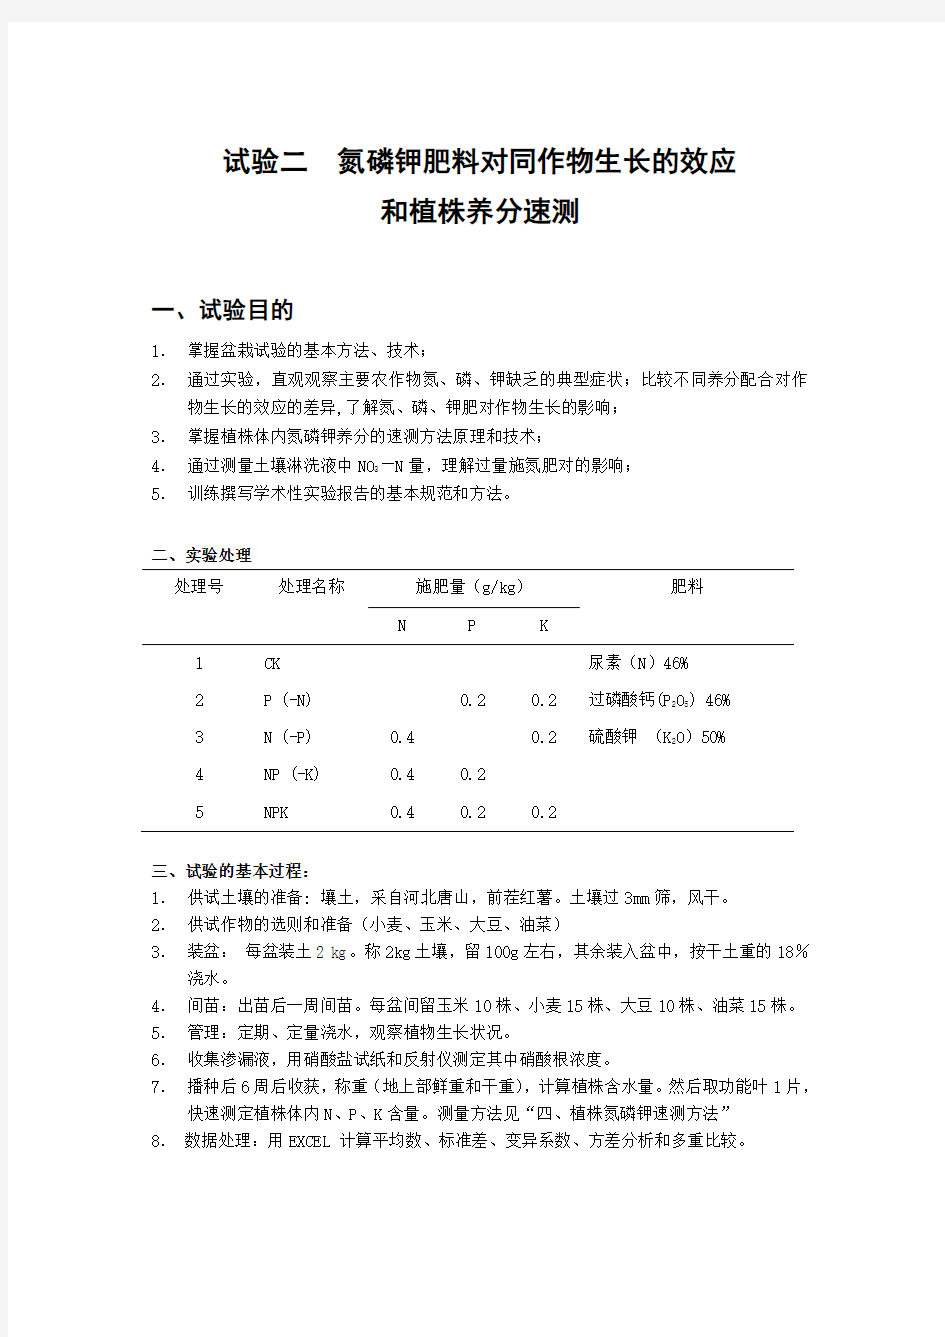 中国农业大学_864植物营养学_笔记试验二